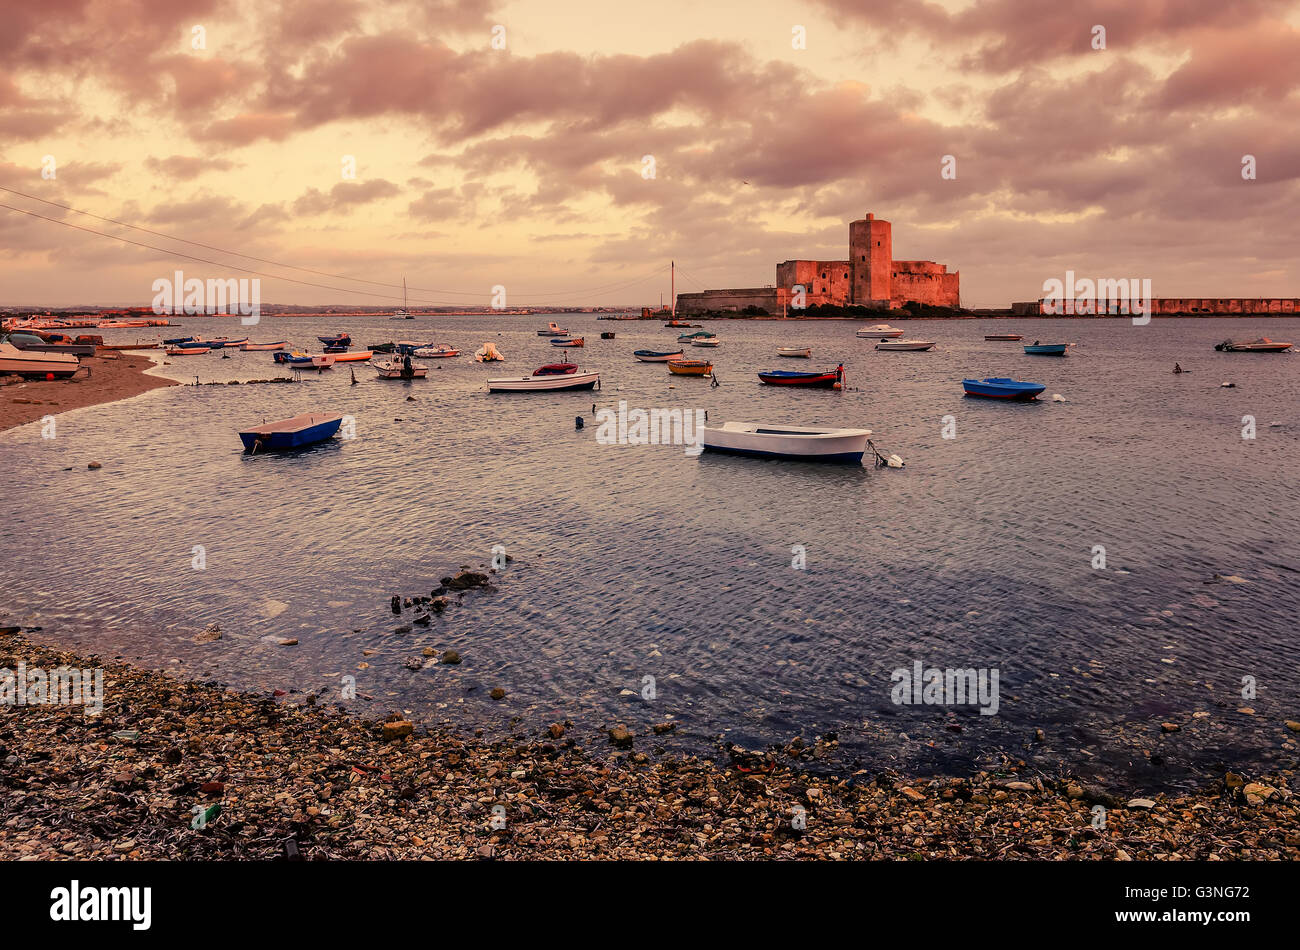 Sicily, Italy: fishermen's harbor in Trapani Stock Photo